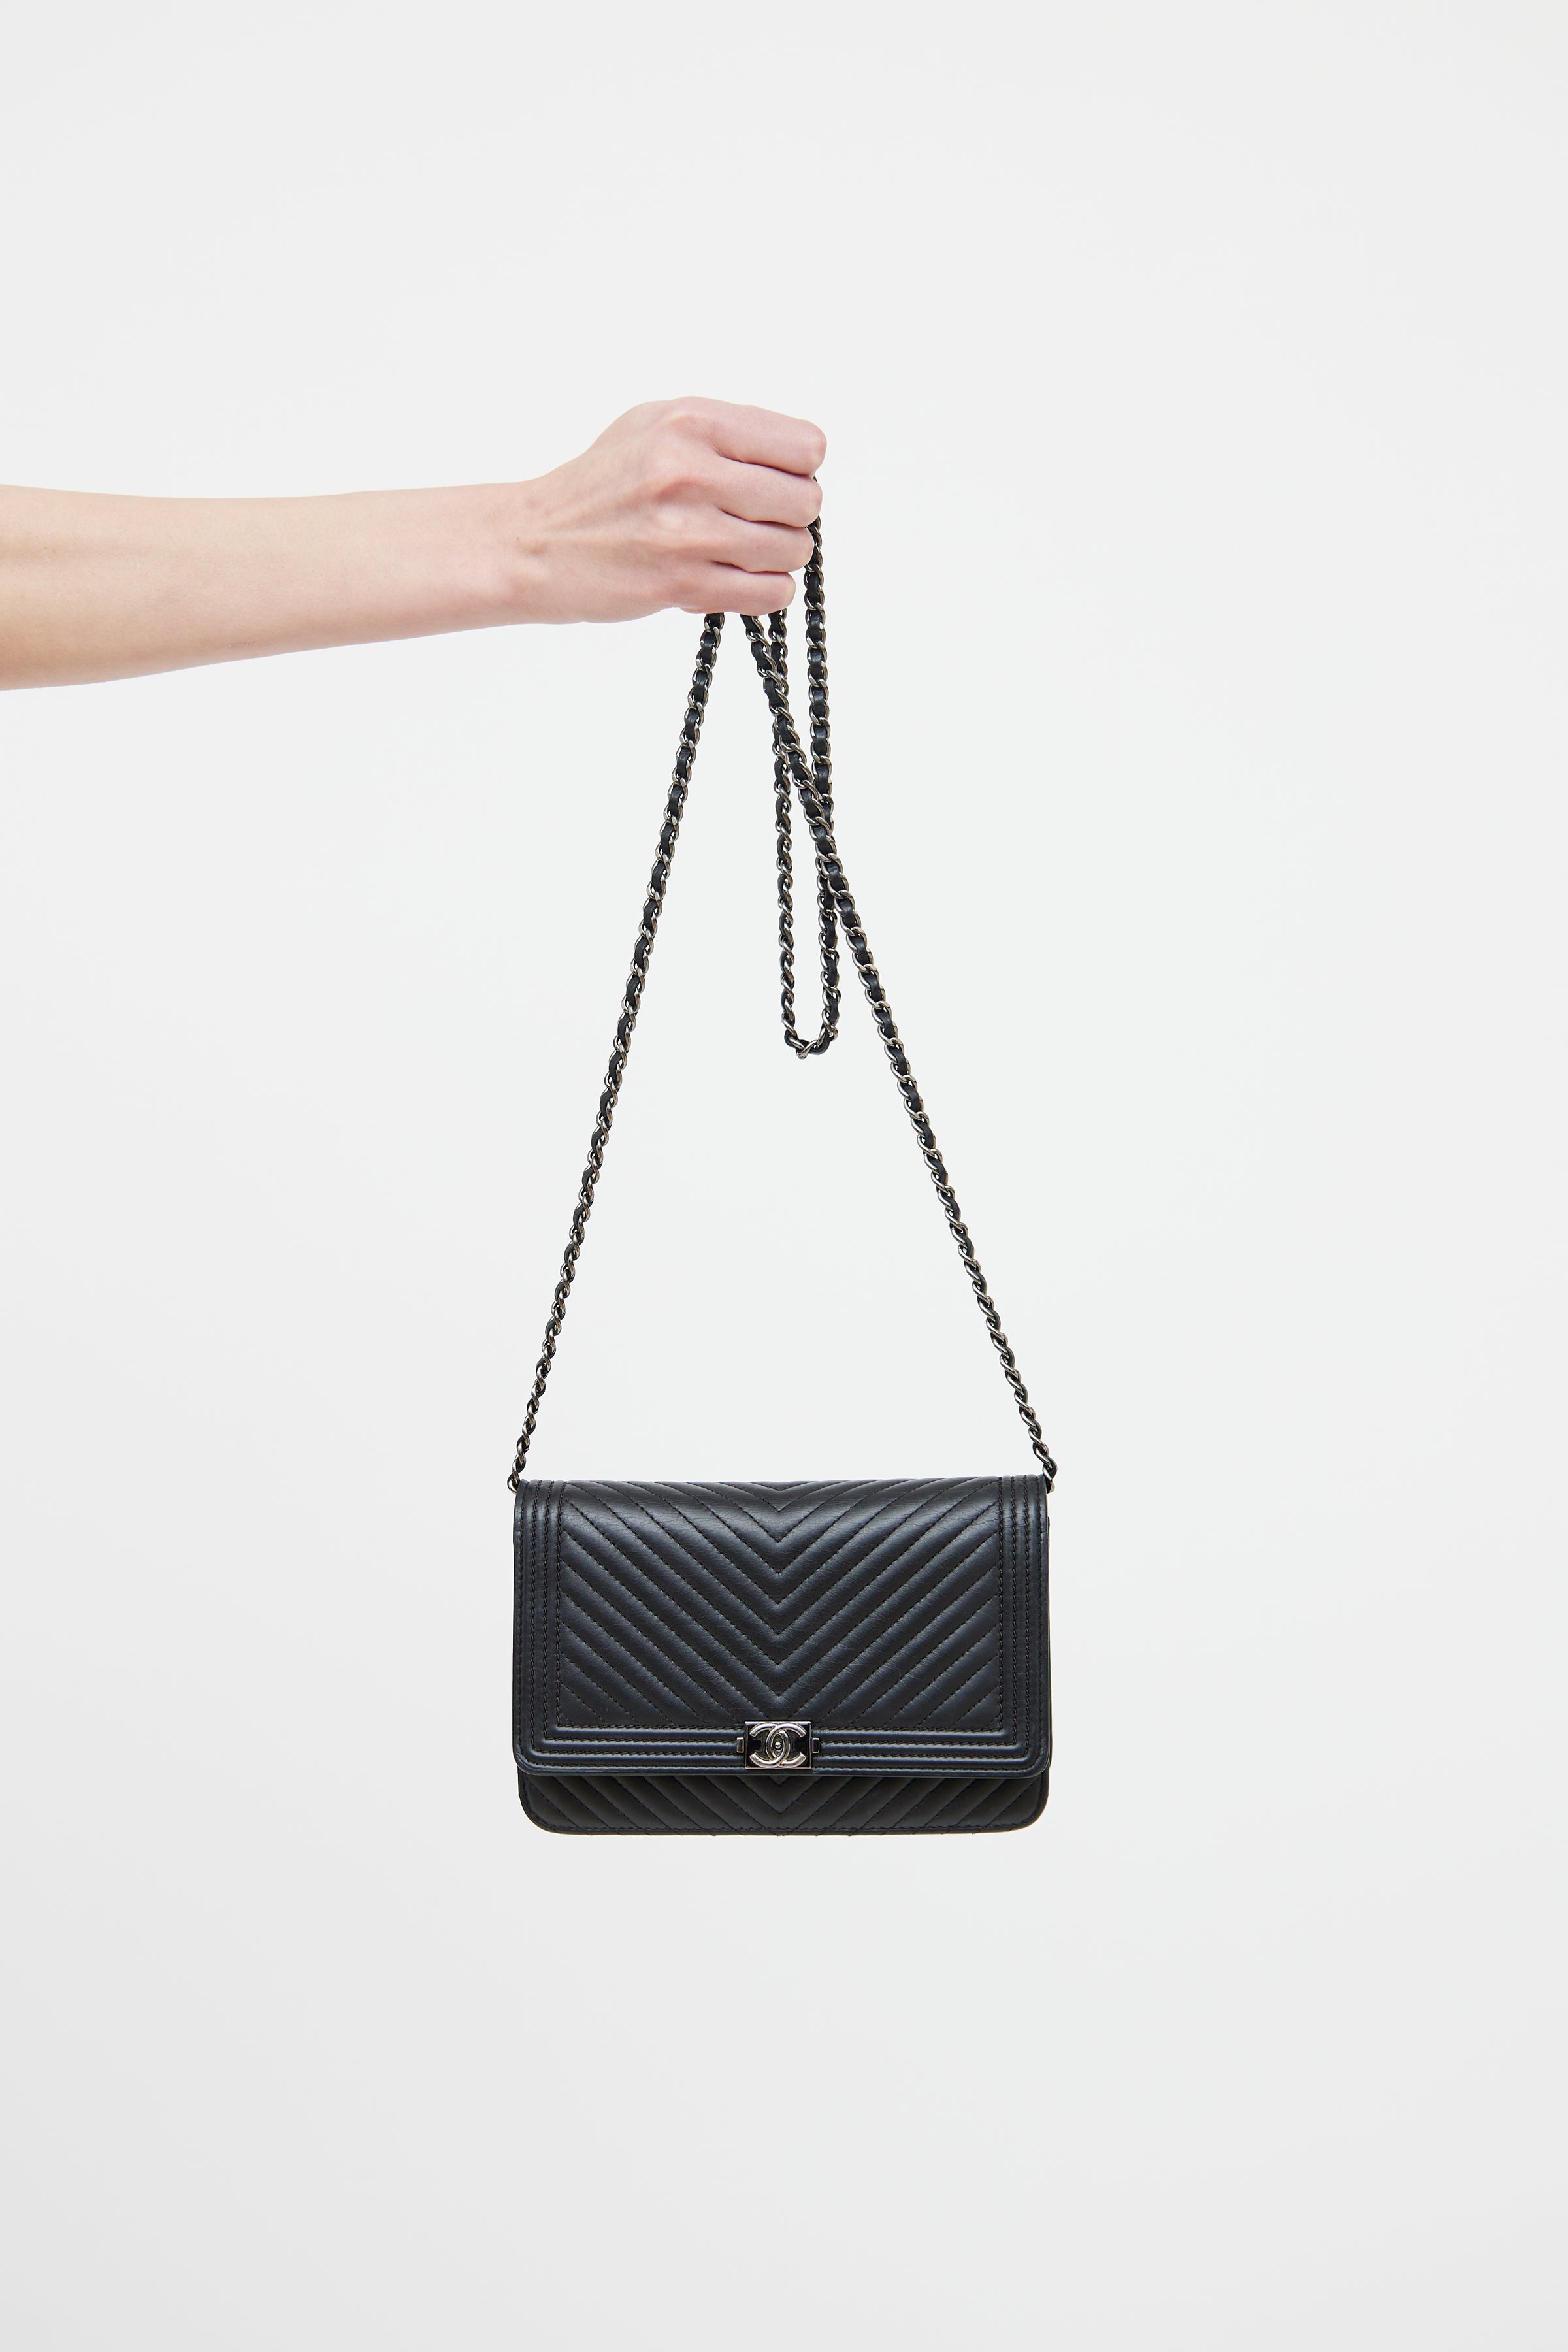 Chanel CC Square Raffia Handbag